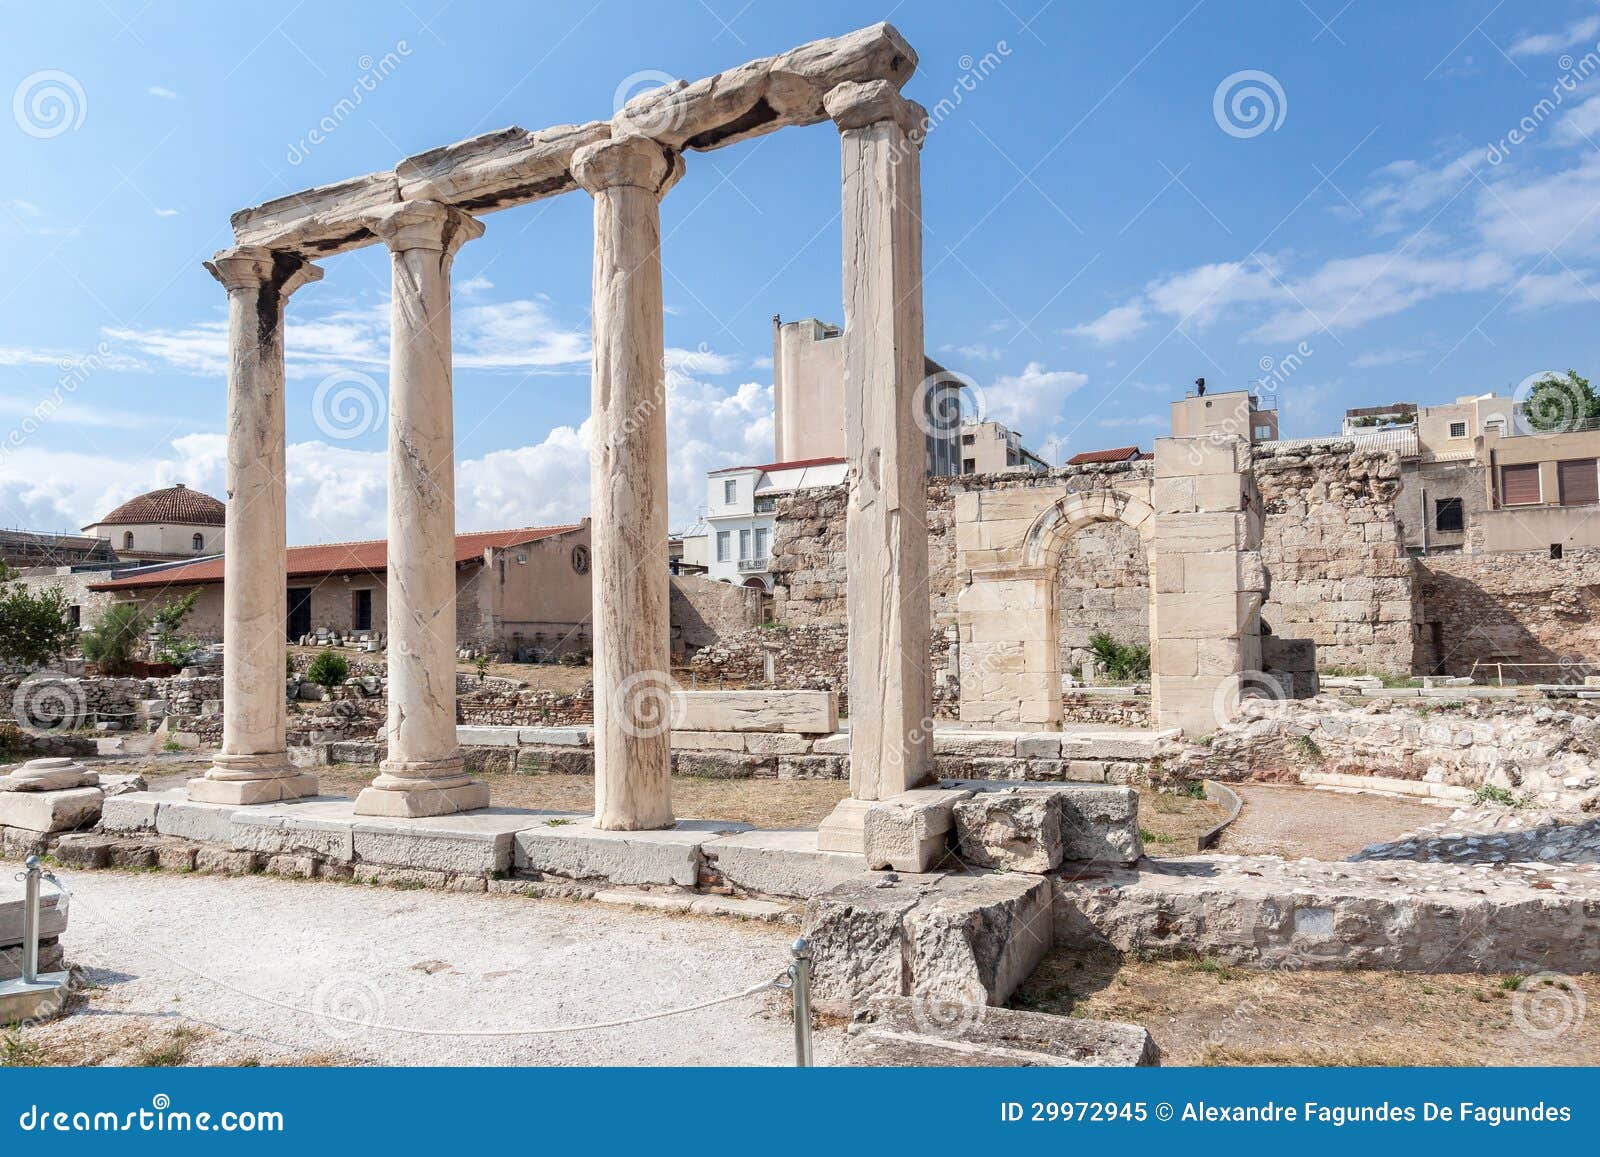 Biblioteca Atene Grecia di Hadrian. Particolare delle colonne doriche in rovine della biblioteca di Hadrian a Atene del centro, Grecia.